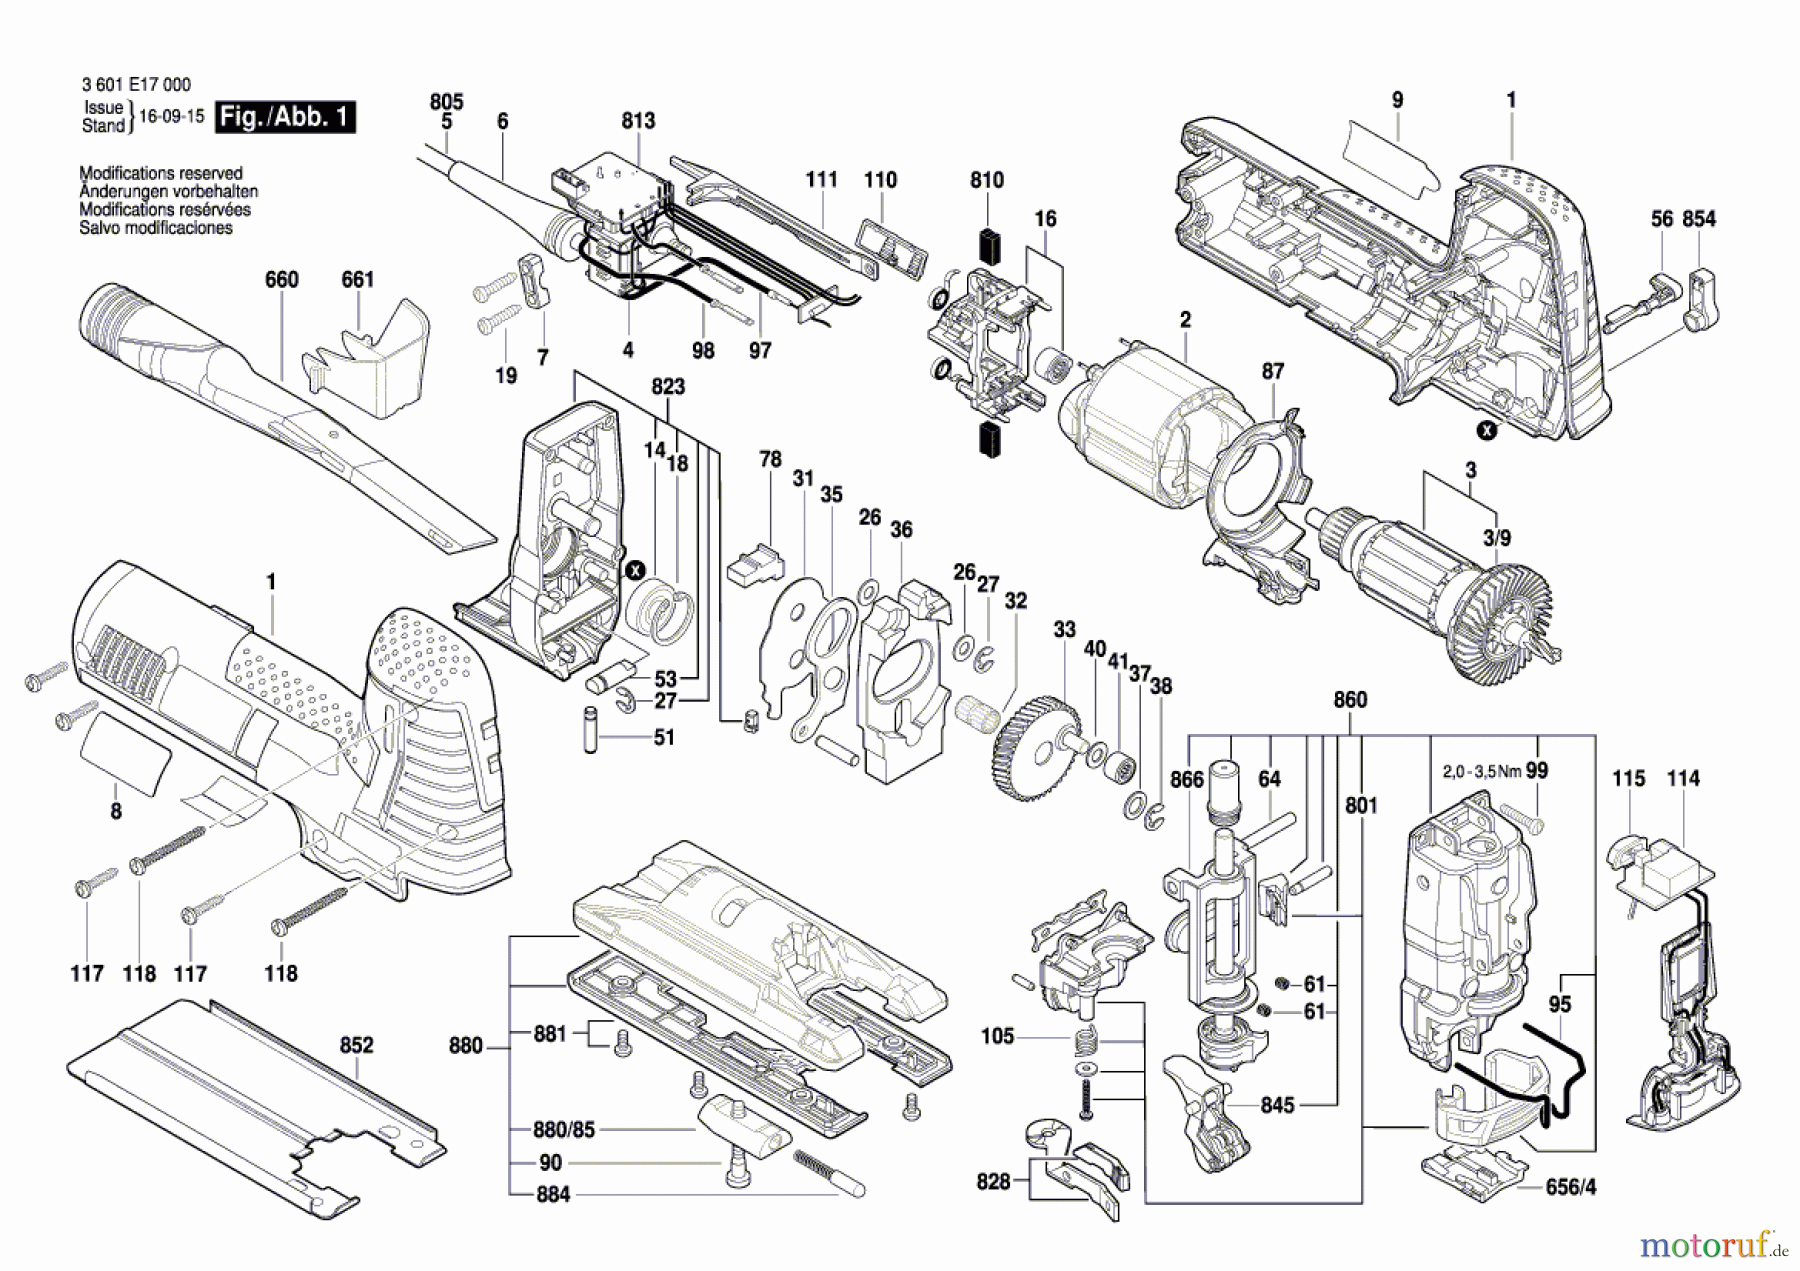  Bosch Werkzeug Pendelstichsäge GST 160 CE Seite 1